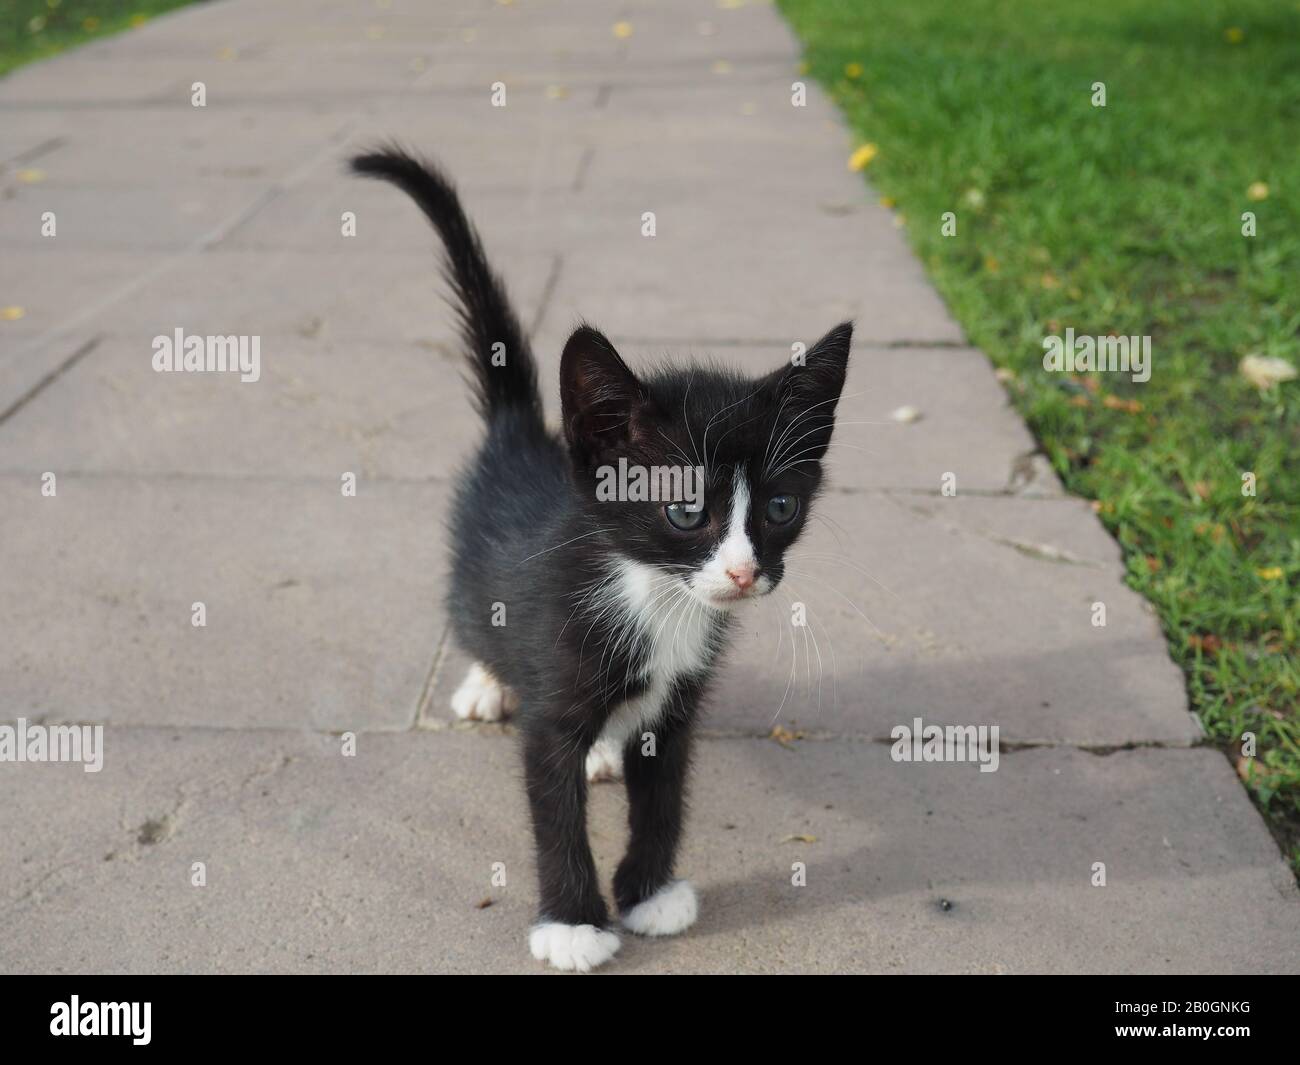 promenade en kitten noir et blanc Banque D'Images